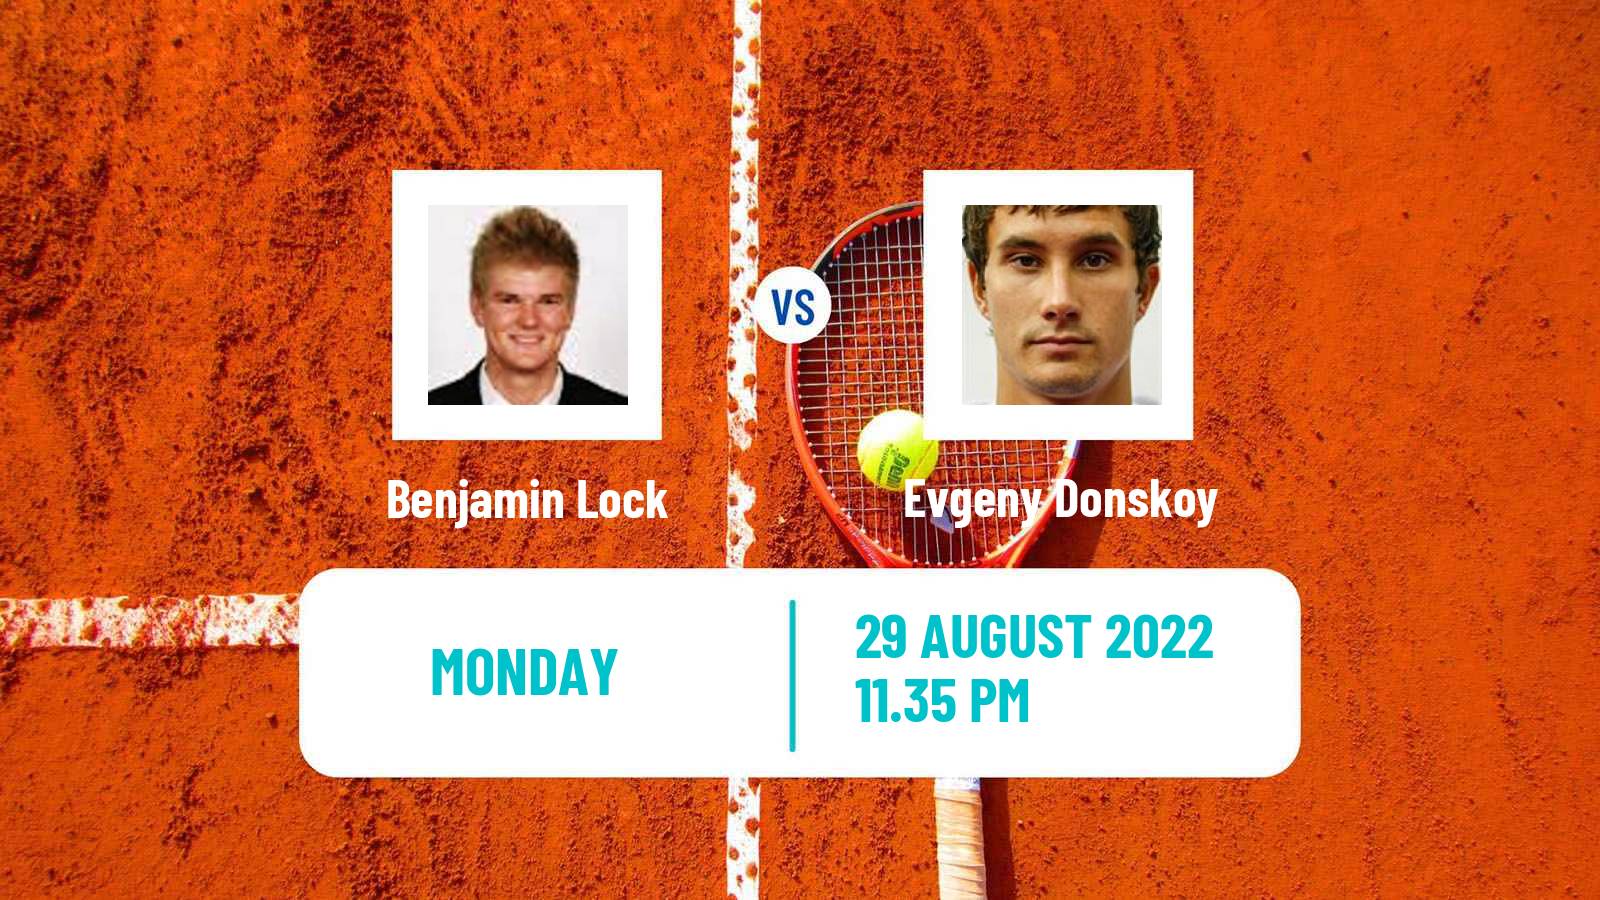 Tennis ATP Challenger Benjamin Lock - Evgeny Donskoy